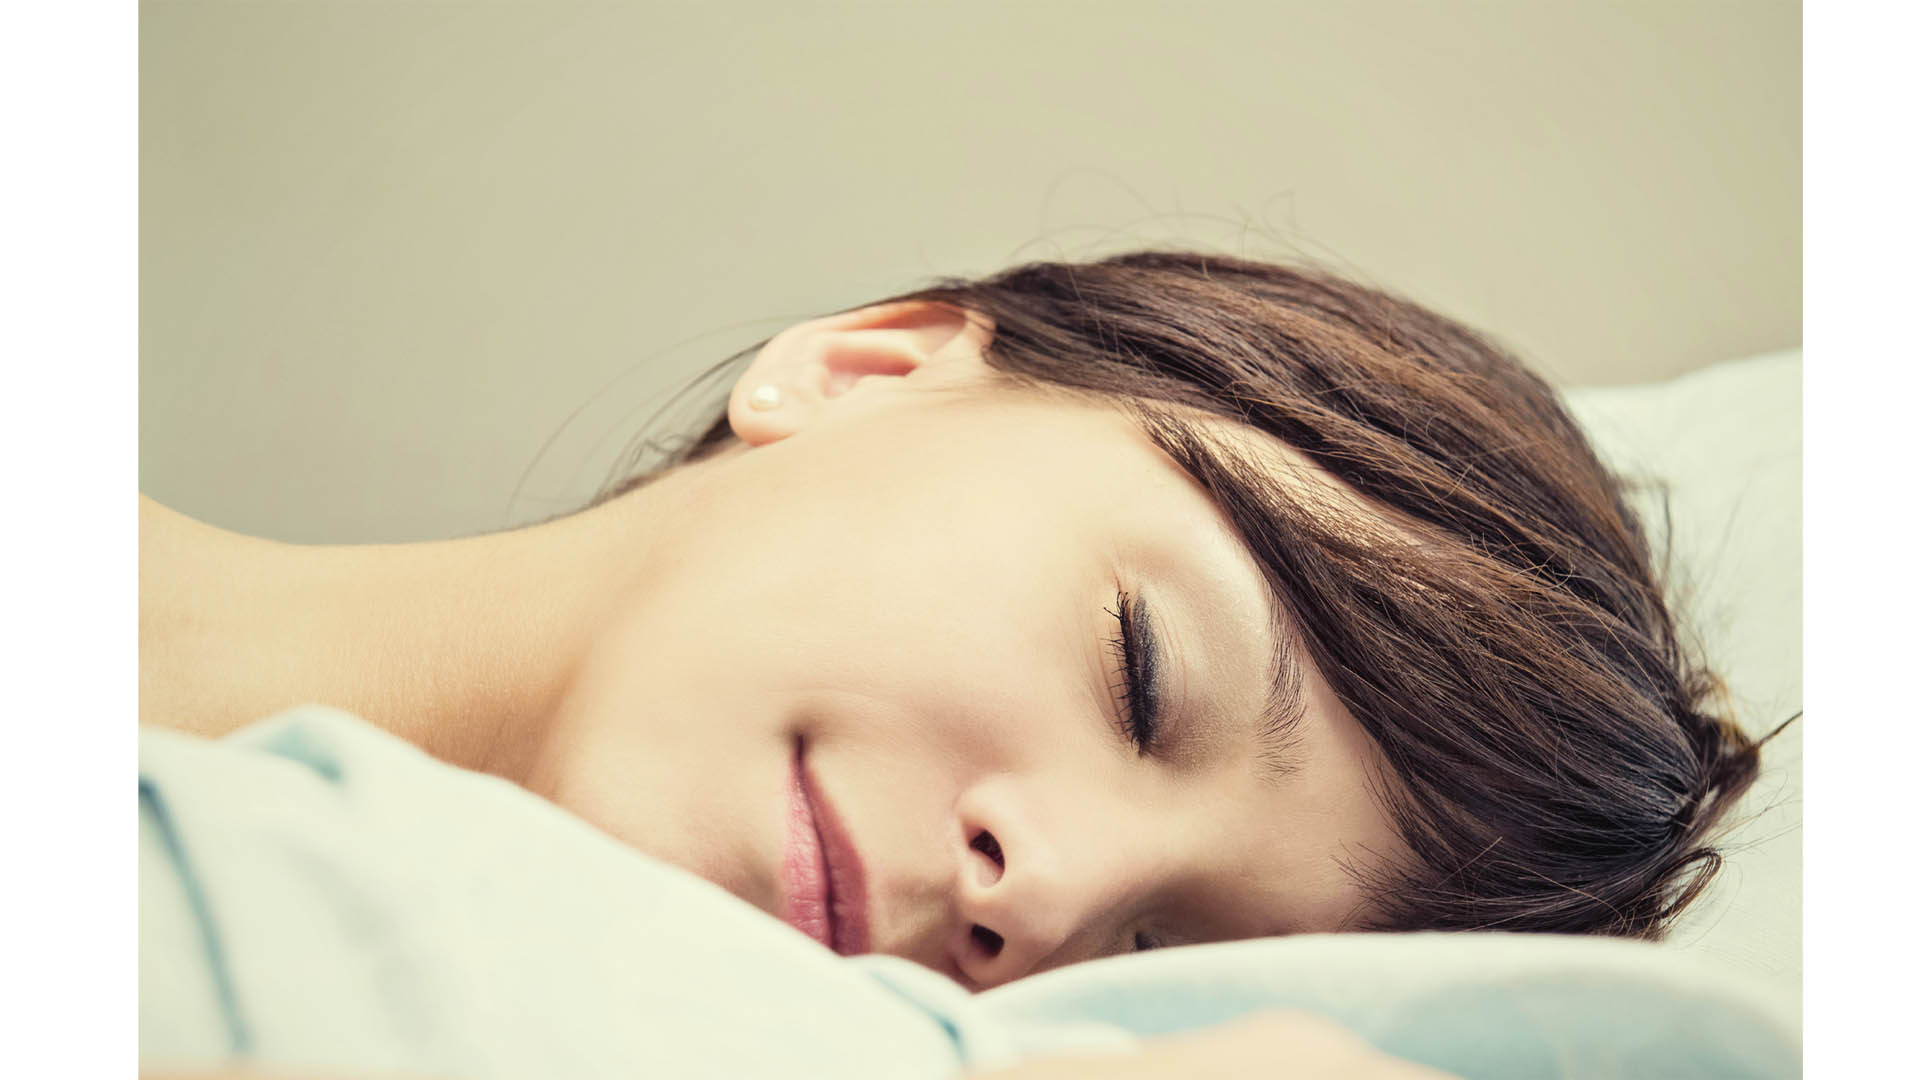 Las personas en edad adulta tienen que dormir de 7 a 9 horas durante la noche, para estar activos durante el día